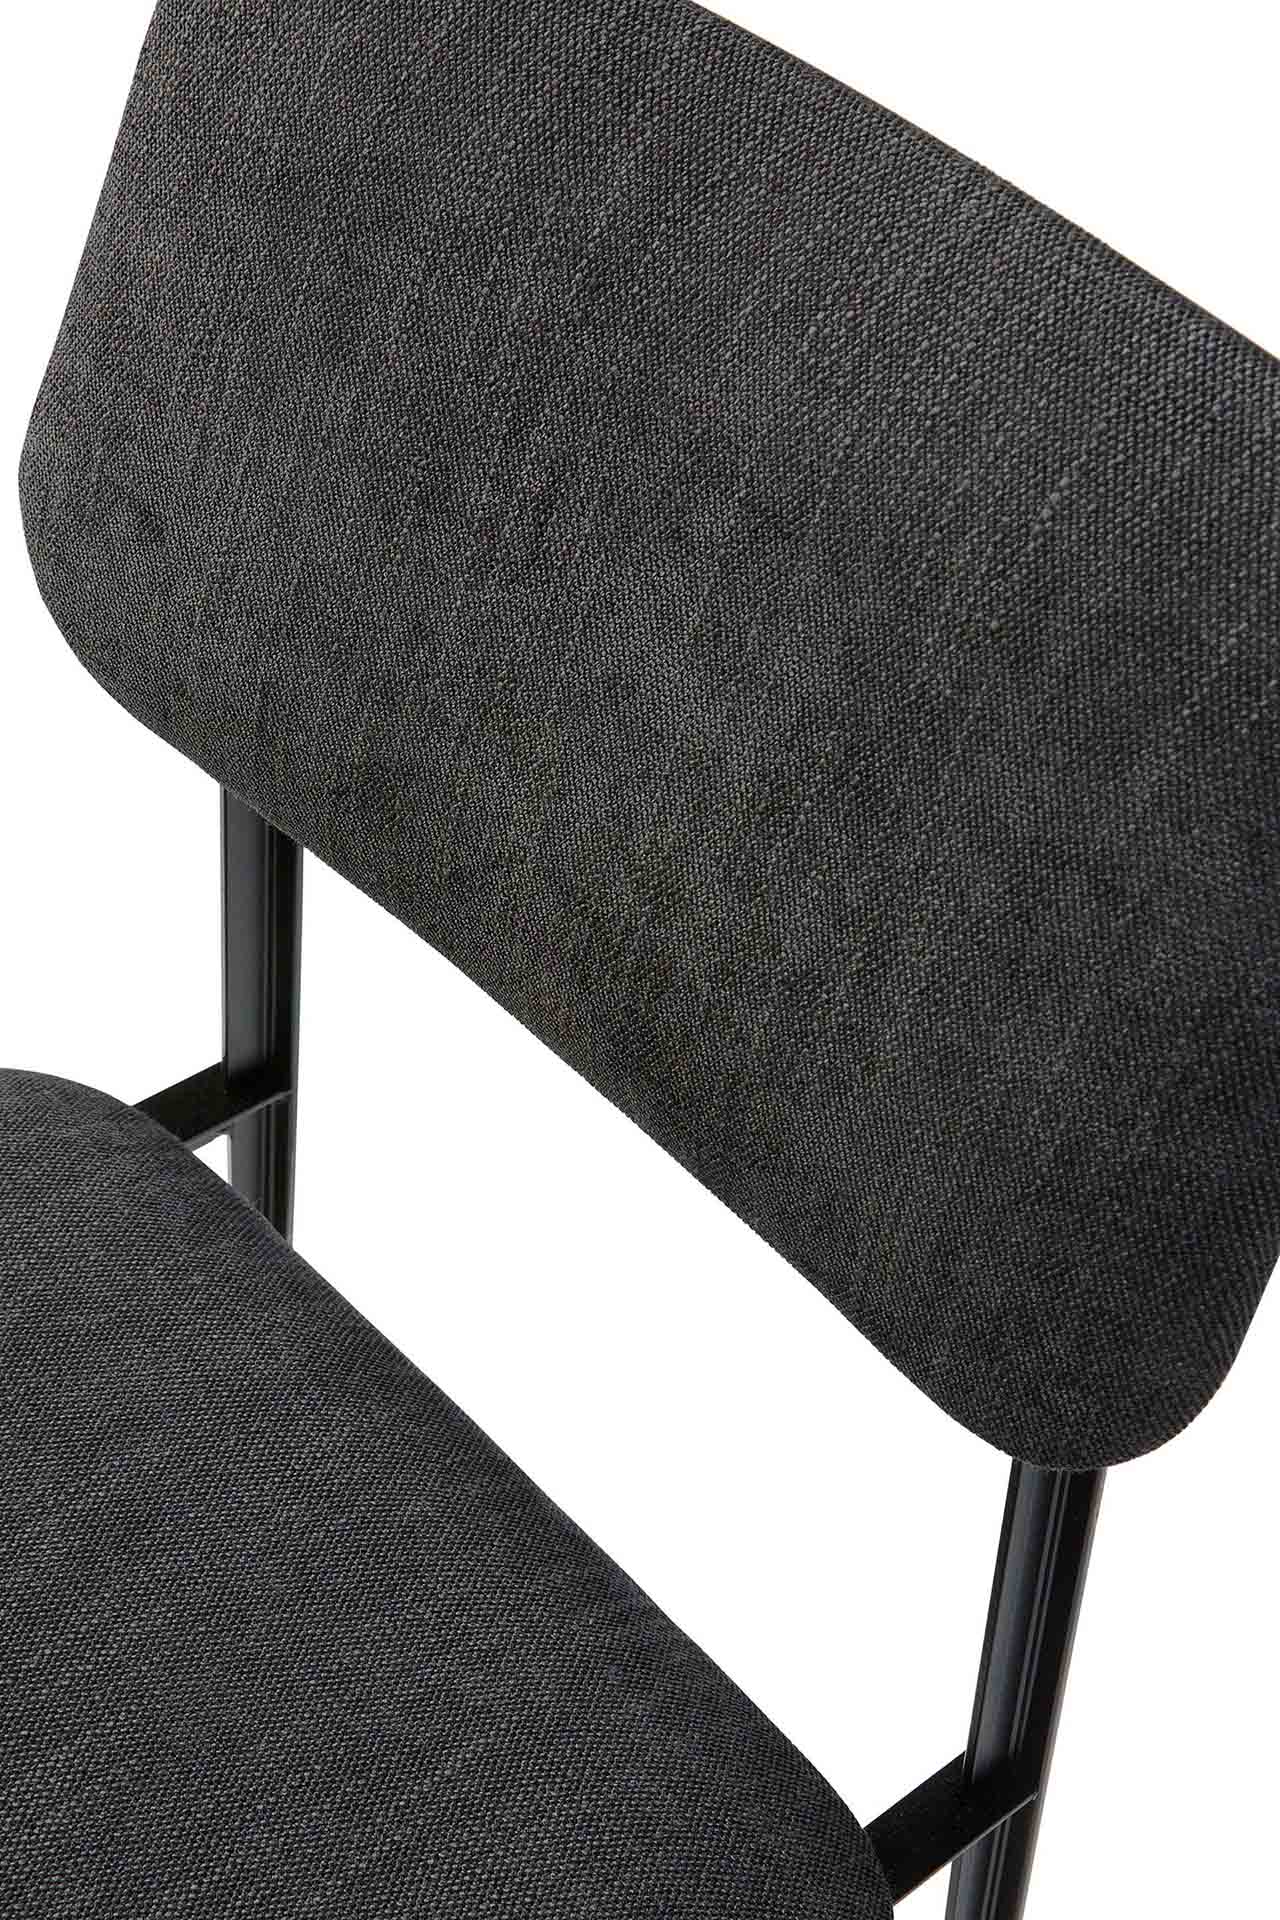 DC Fabric Dining Chair, Dark Grey